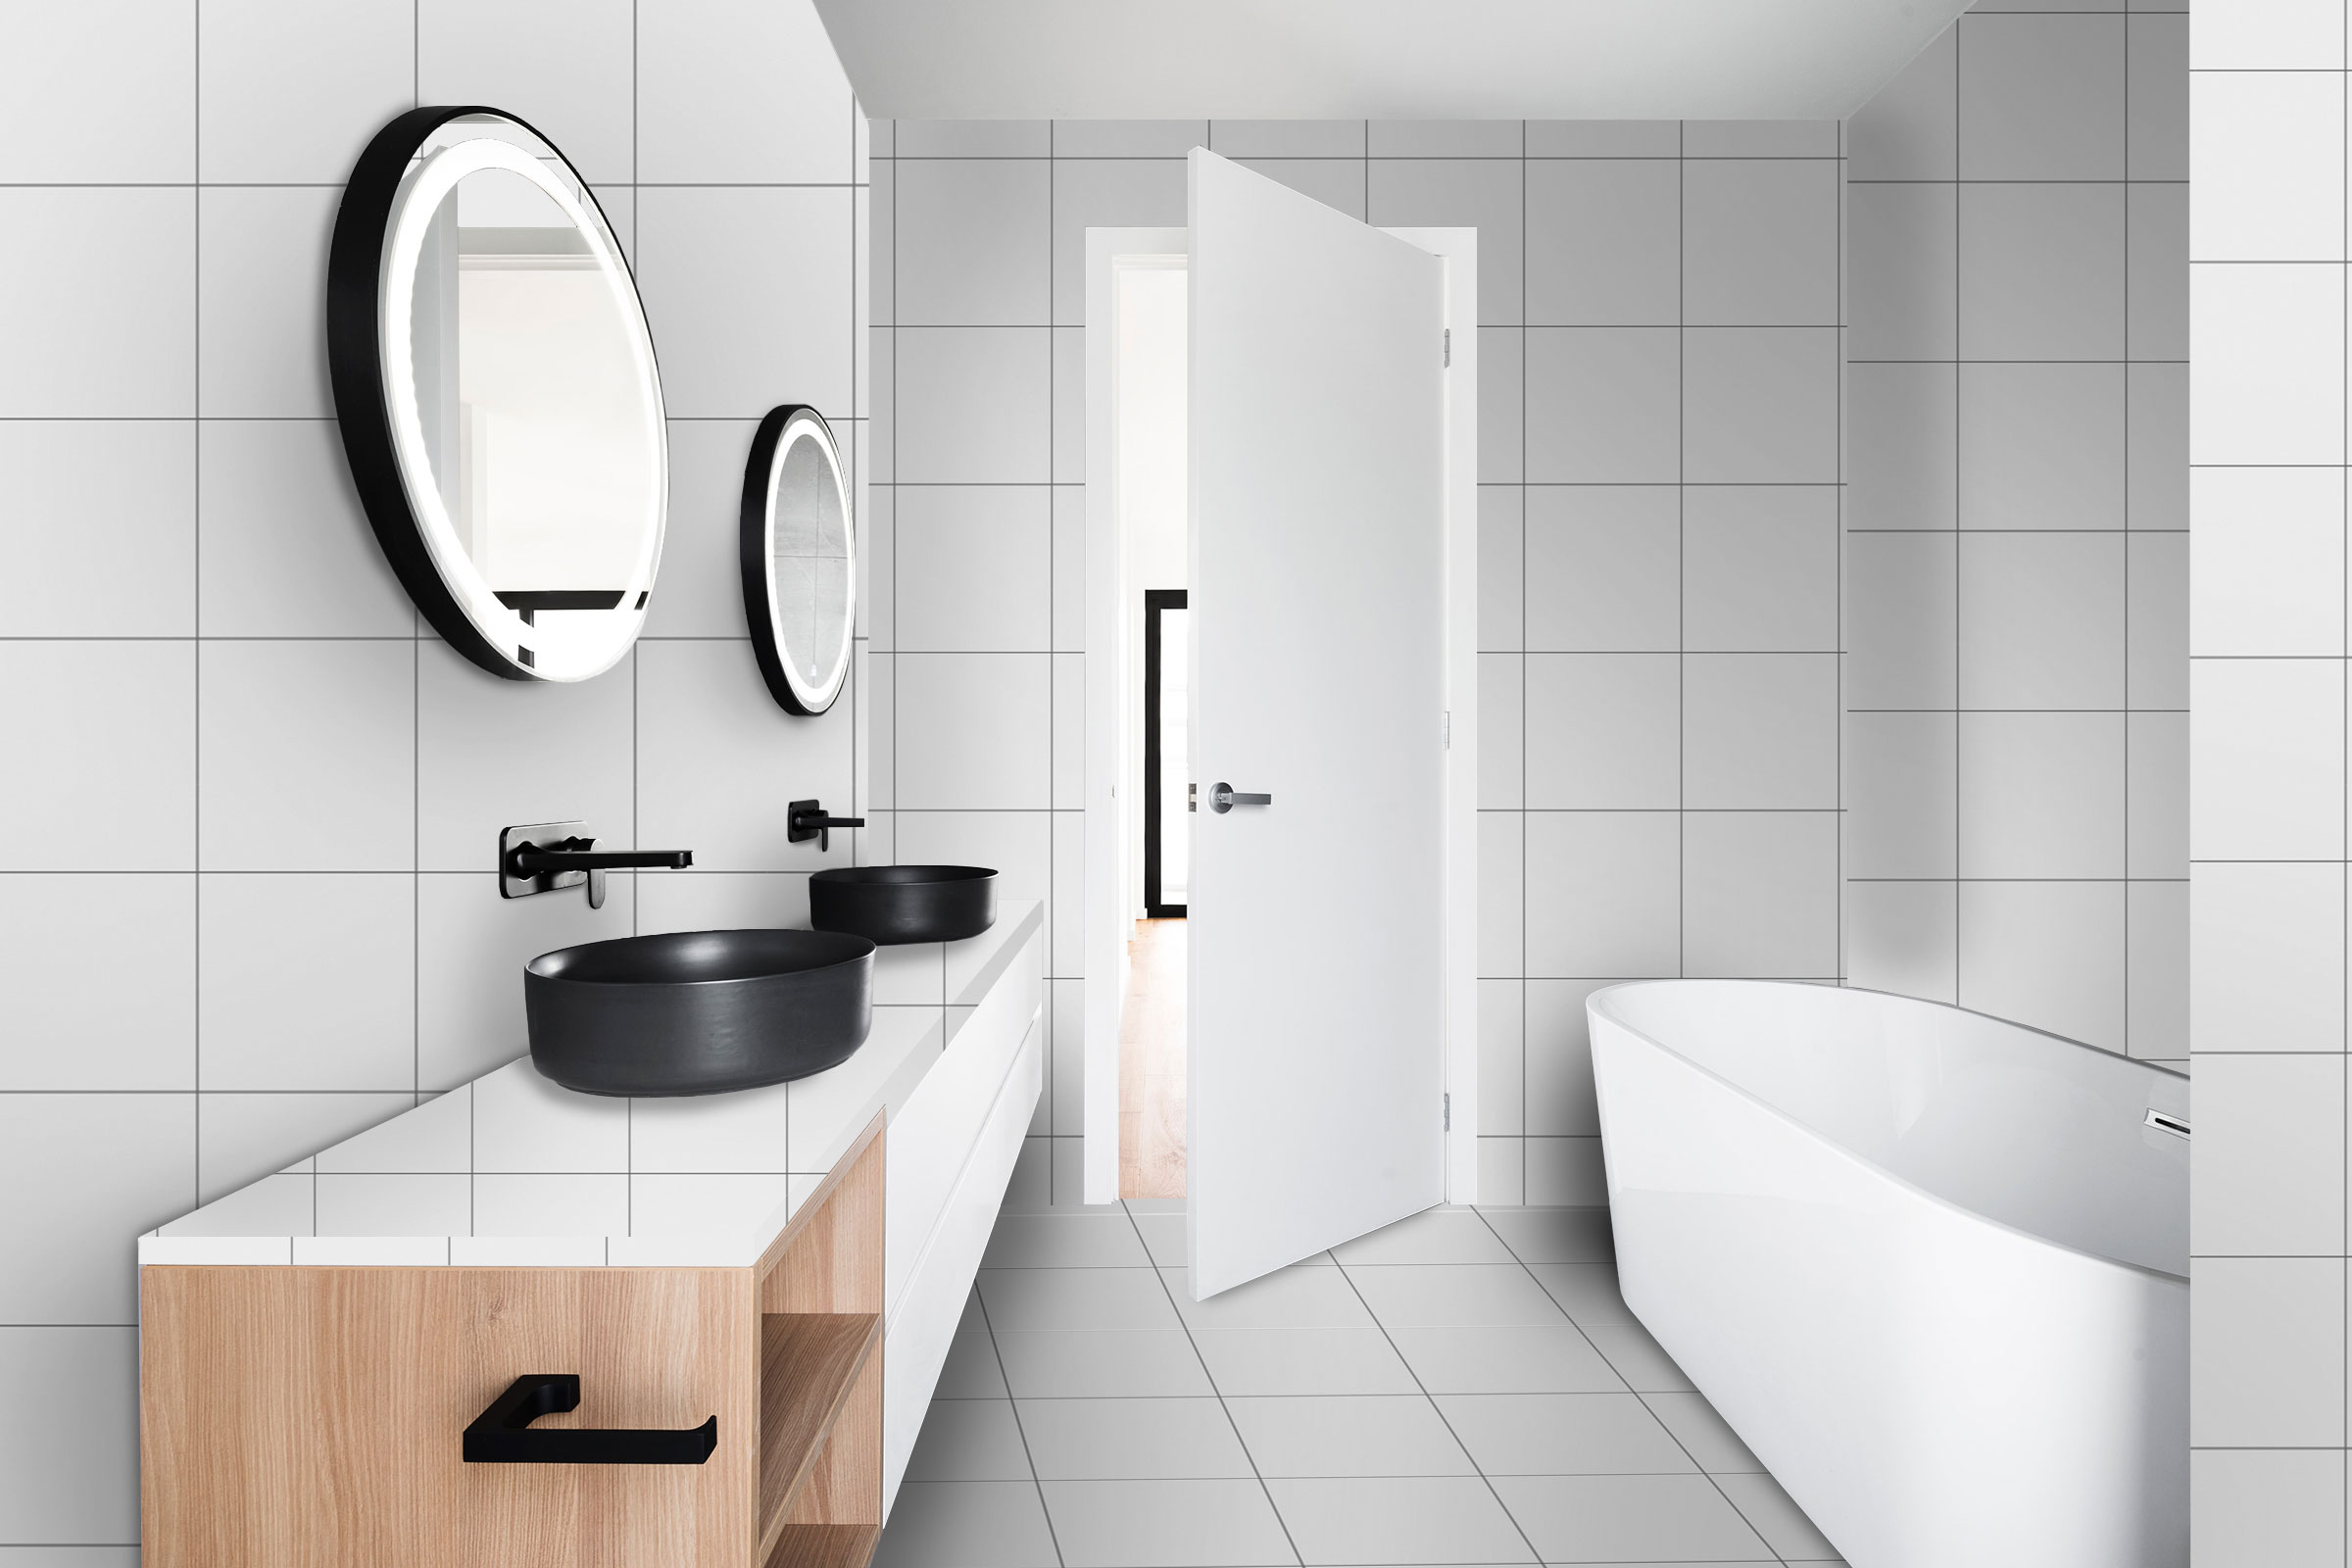 Raumgestaltung für das Badezimmer: Erstellen Sie mit unserem Konfigurator Oberflächenbeispiele in unseren Farben